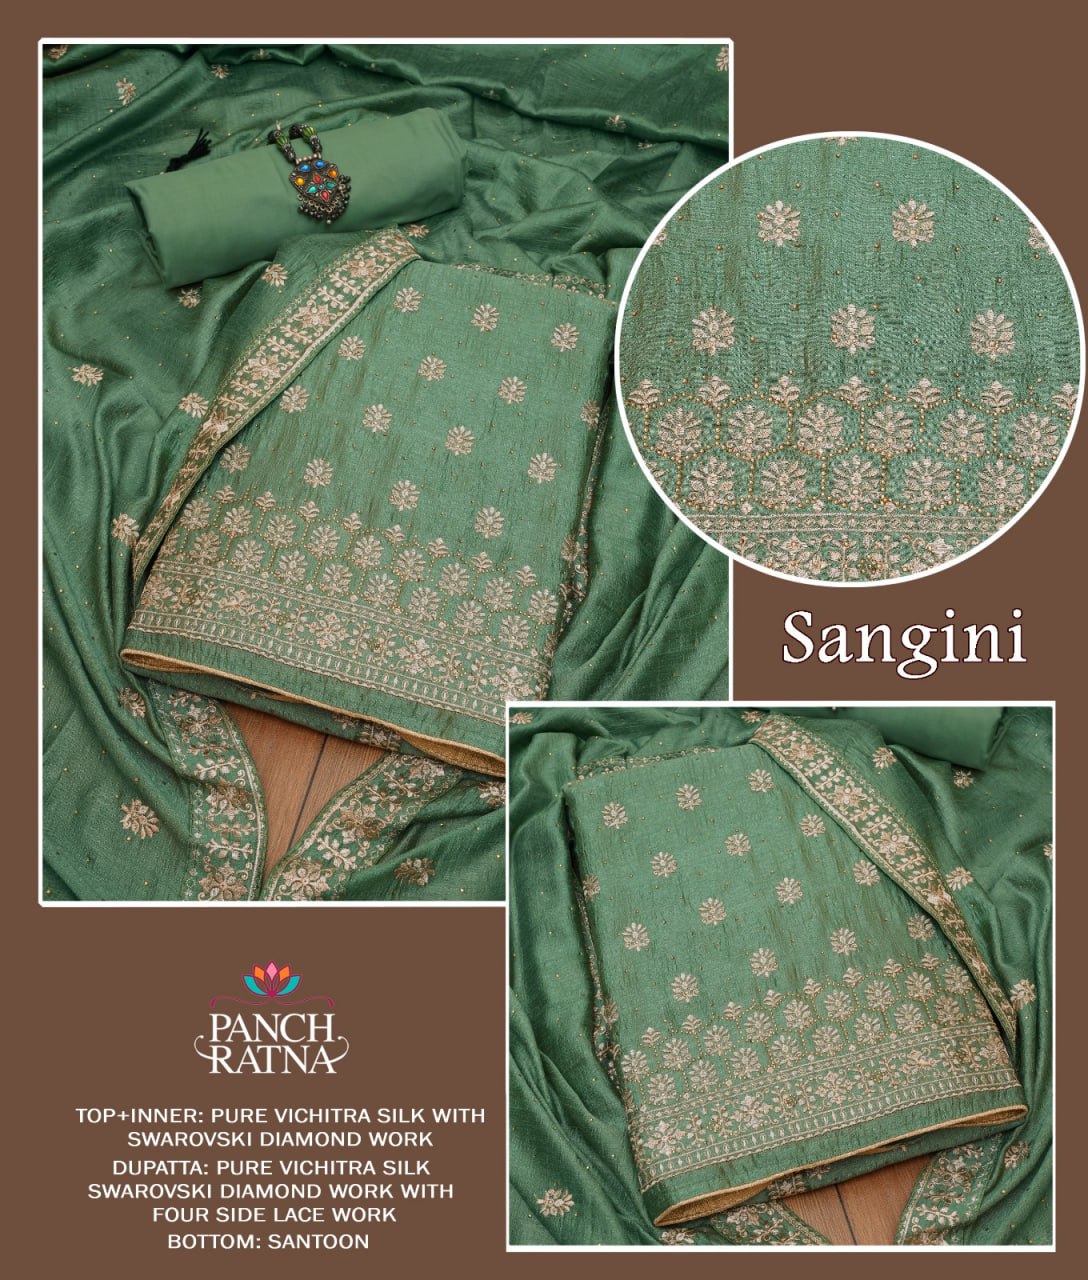 Sangini Panch Ratna Vichitra Silk Salwar Suits